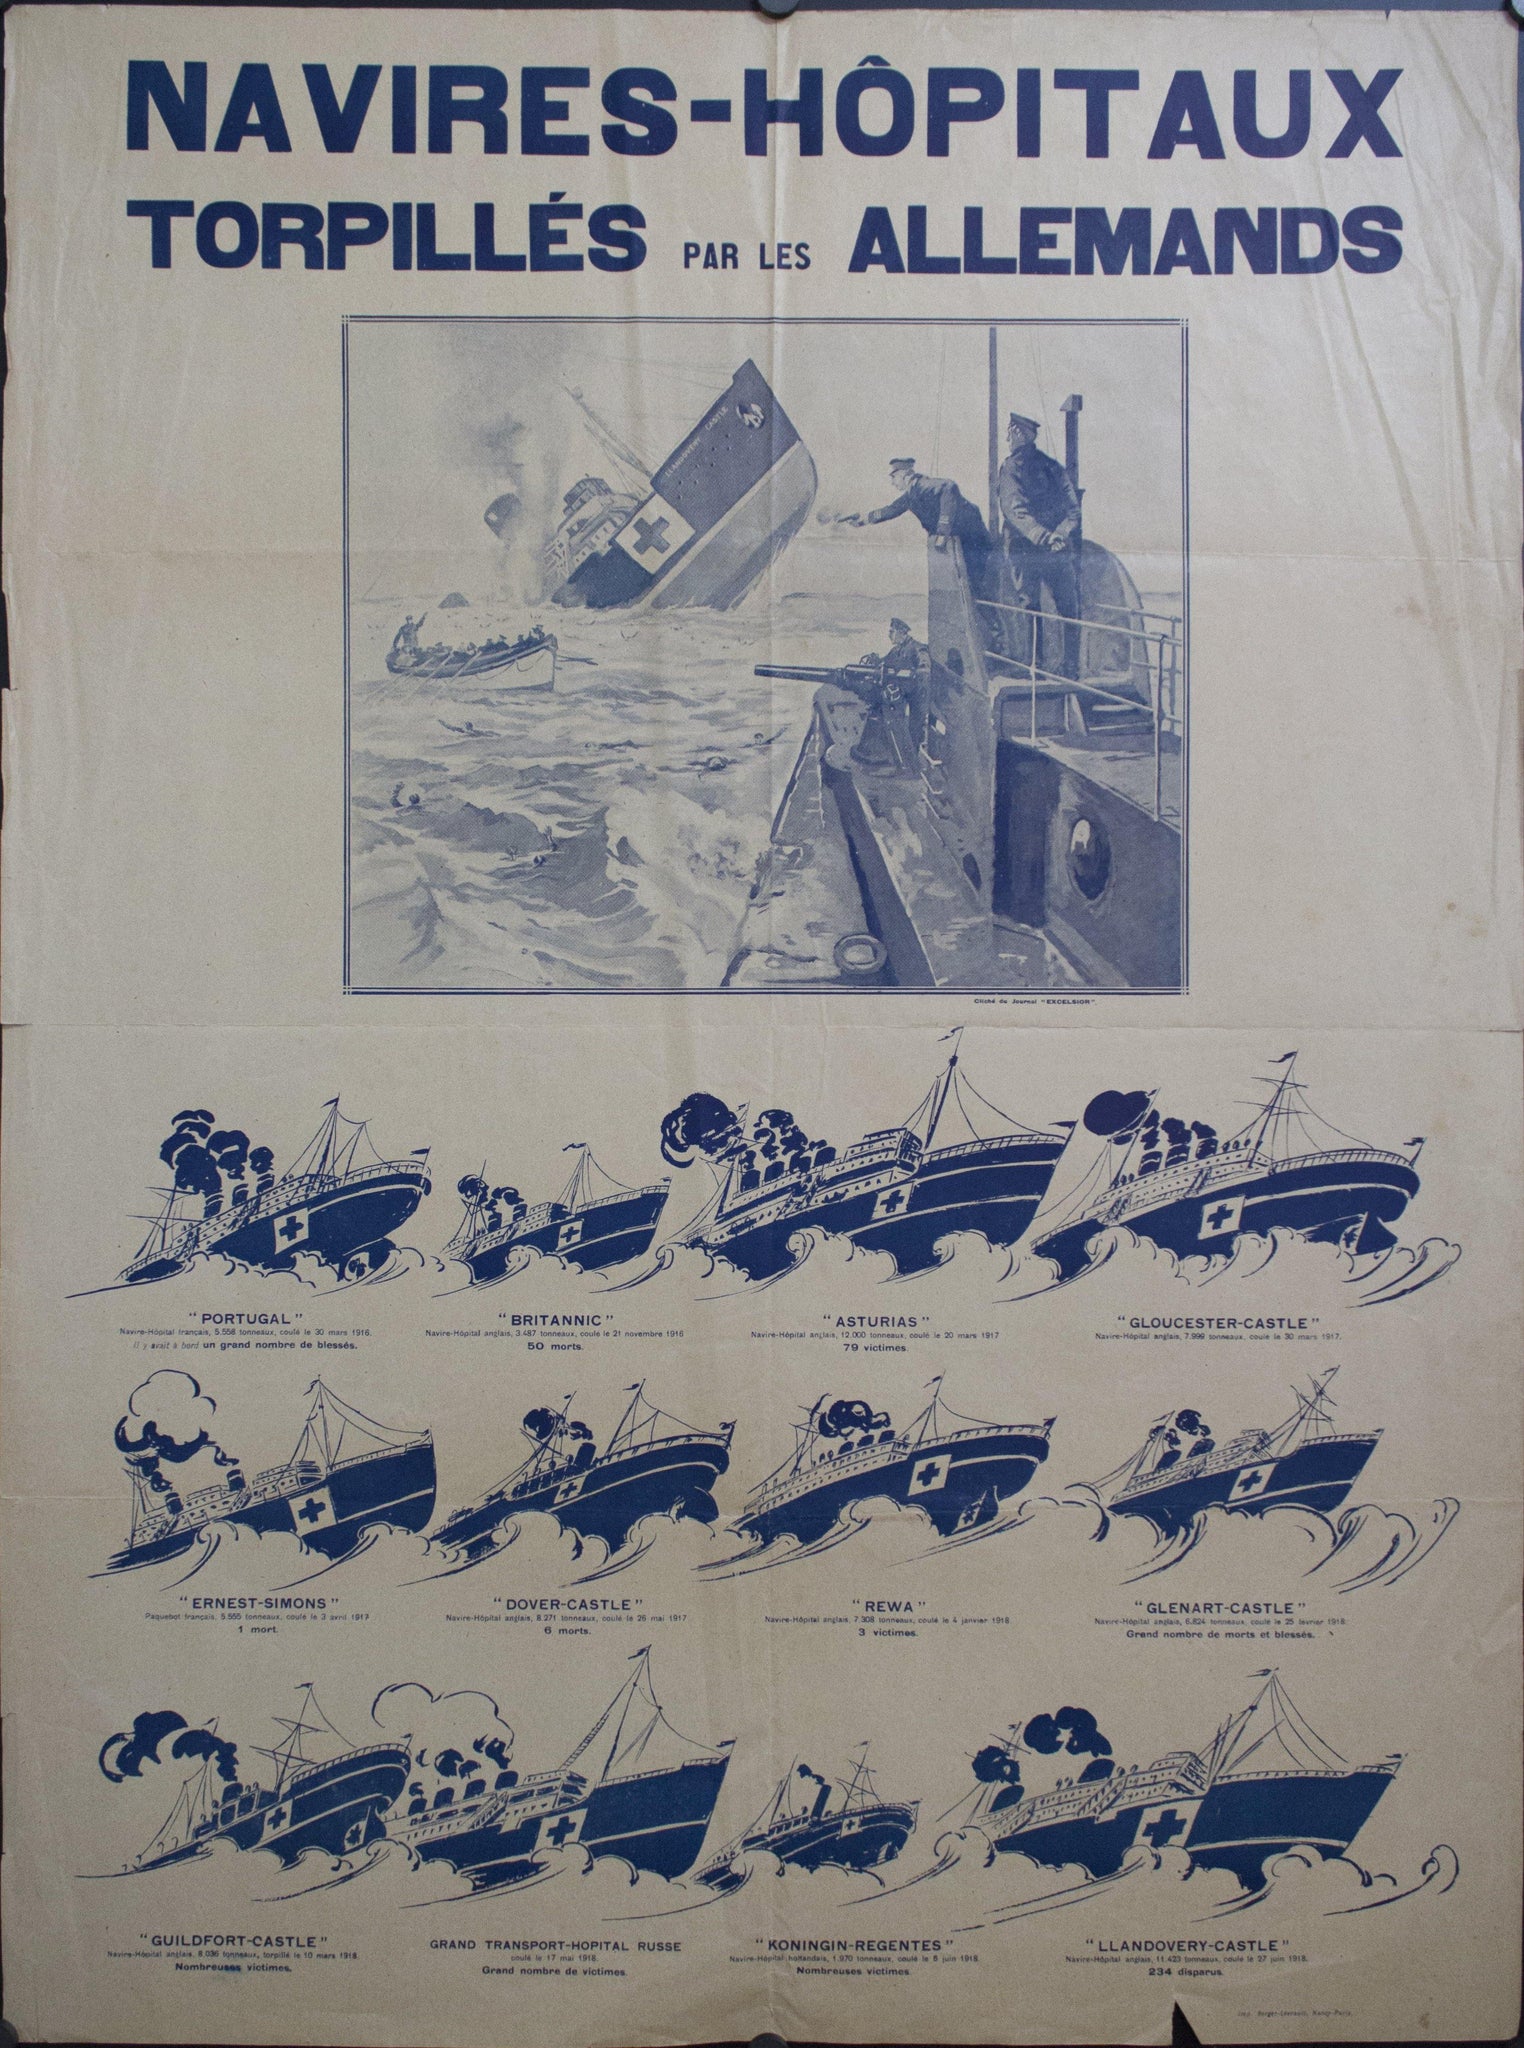 c. 1918 Navires-Hopitaux | Torpilles par les Allemands - Golden Age Posters